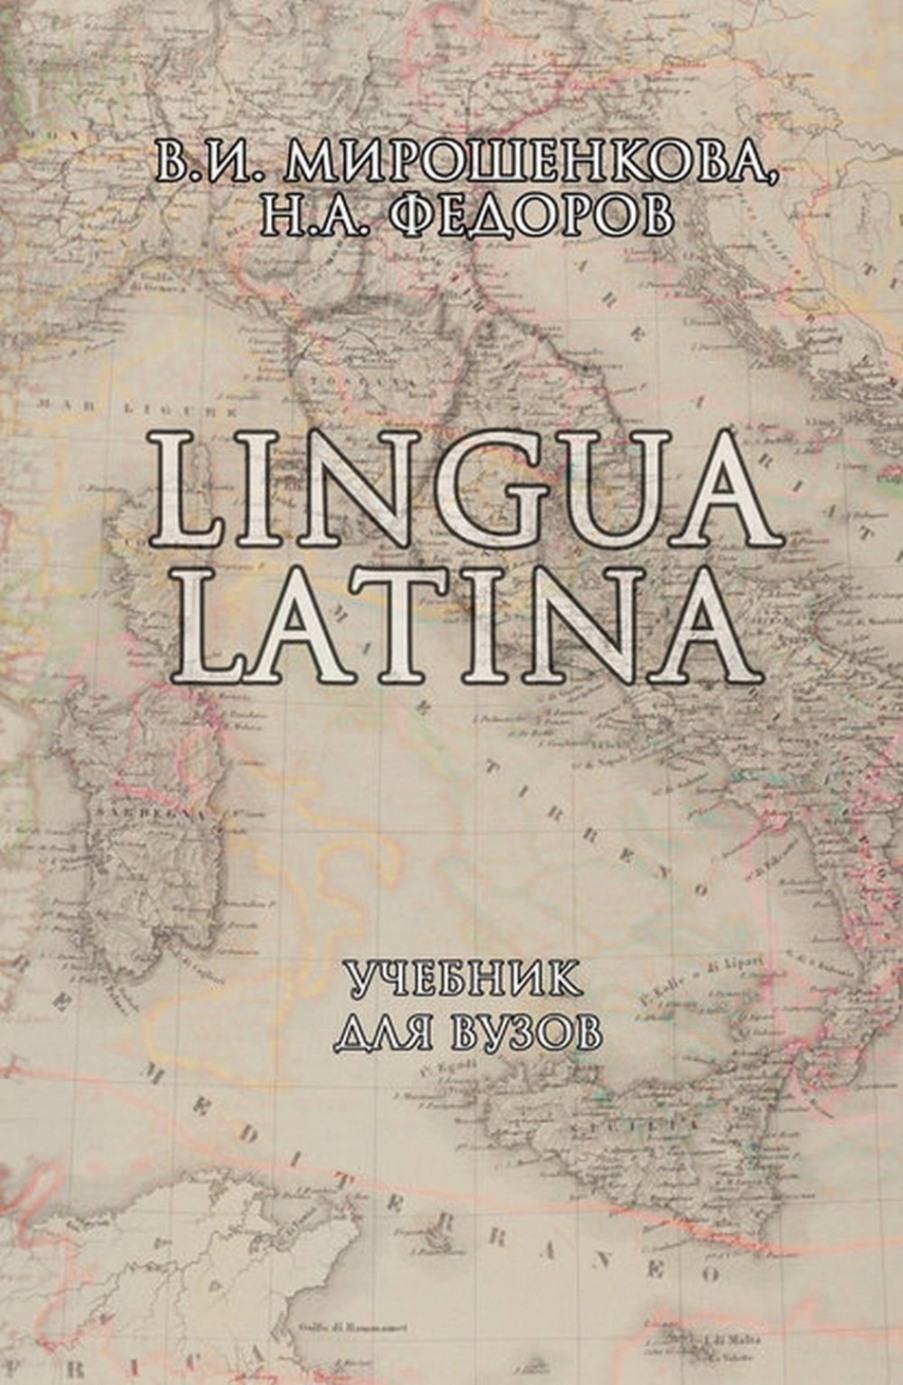  ..,  .. Lingua Latina 